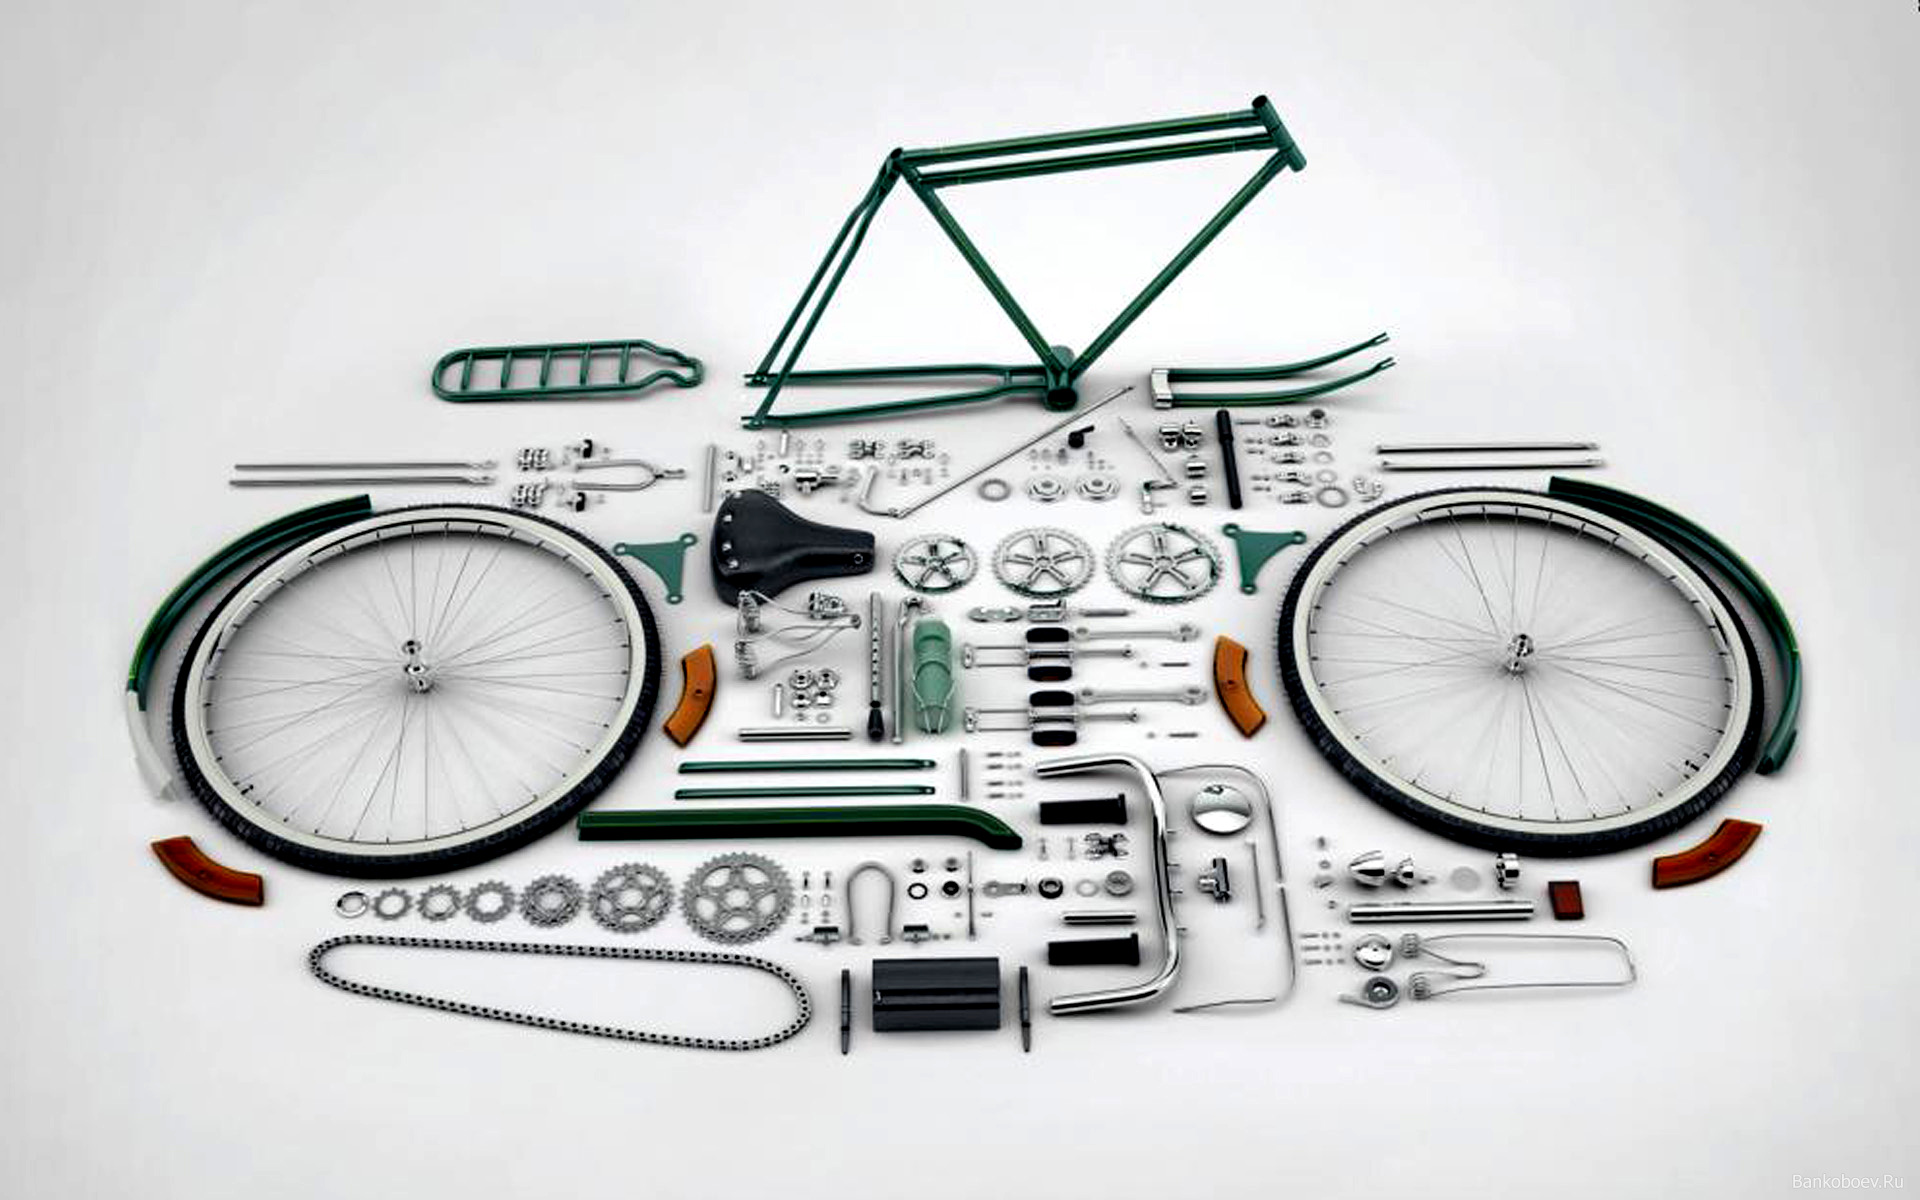 disassembled bike.jpg